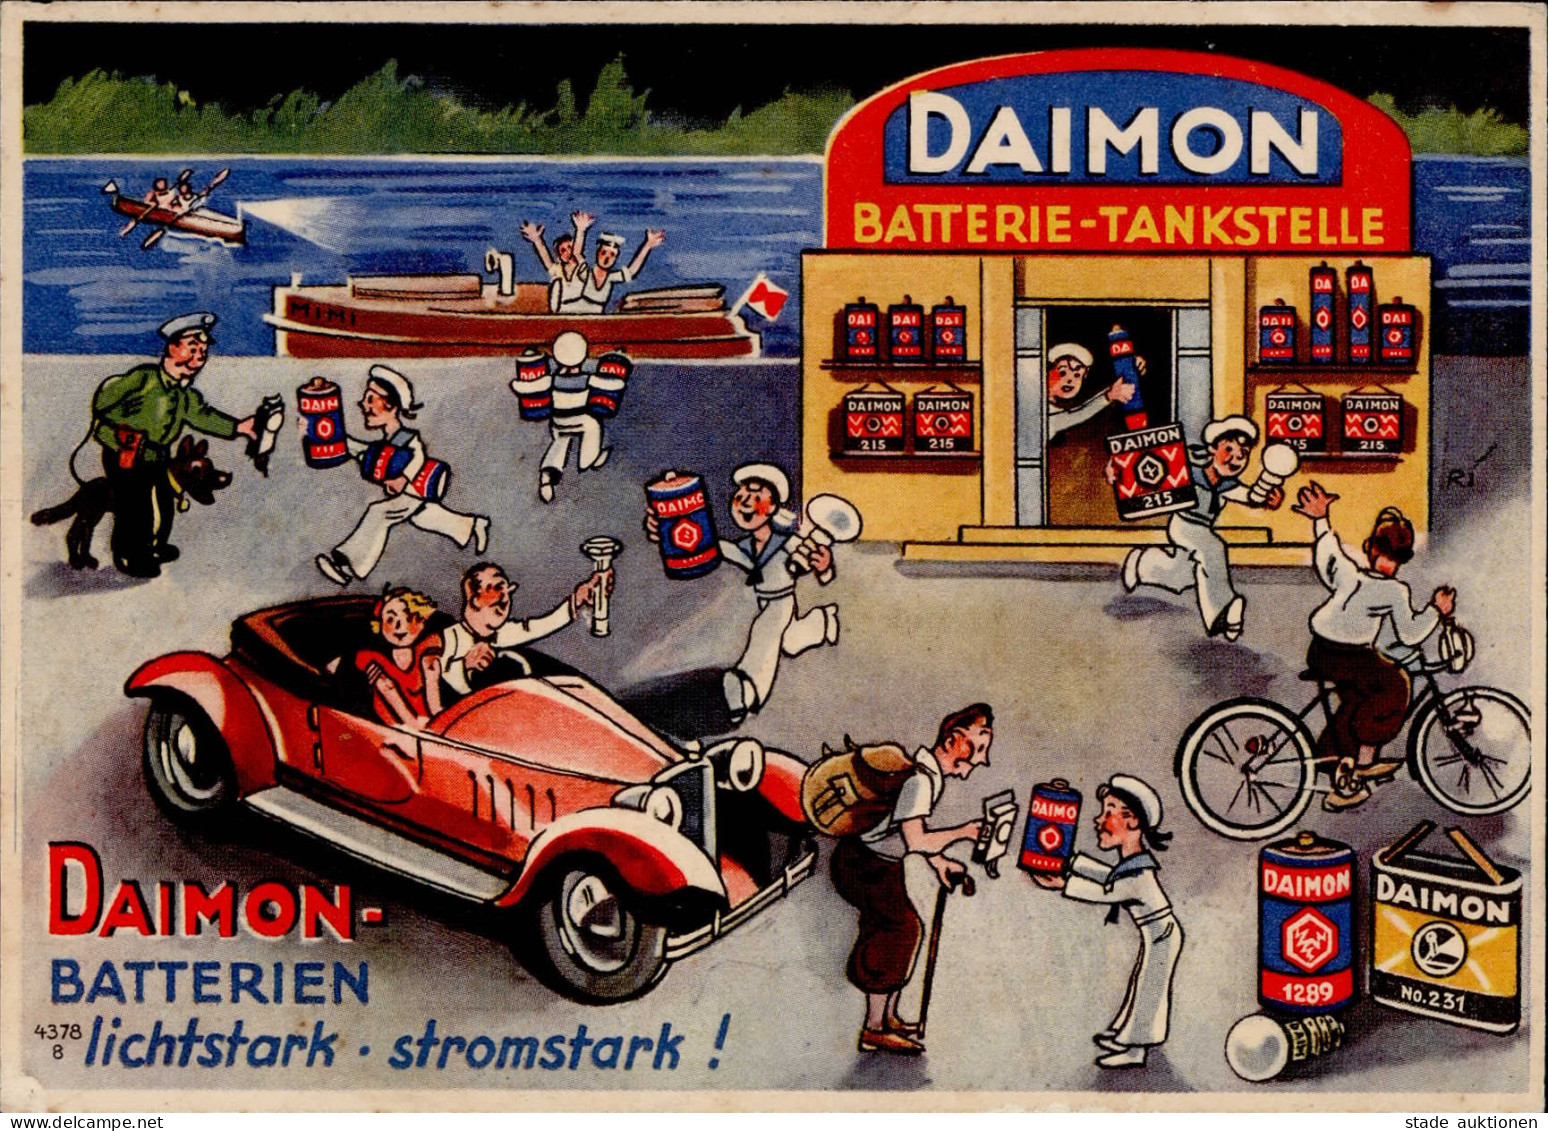 Werbung Daimon Batterien I-II (kl. Eckbug, Fleckig) Publicite - Publicidad